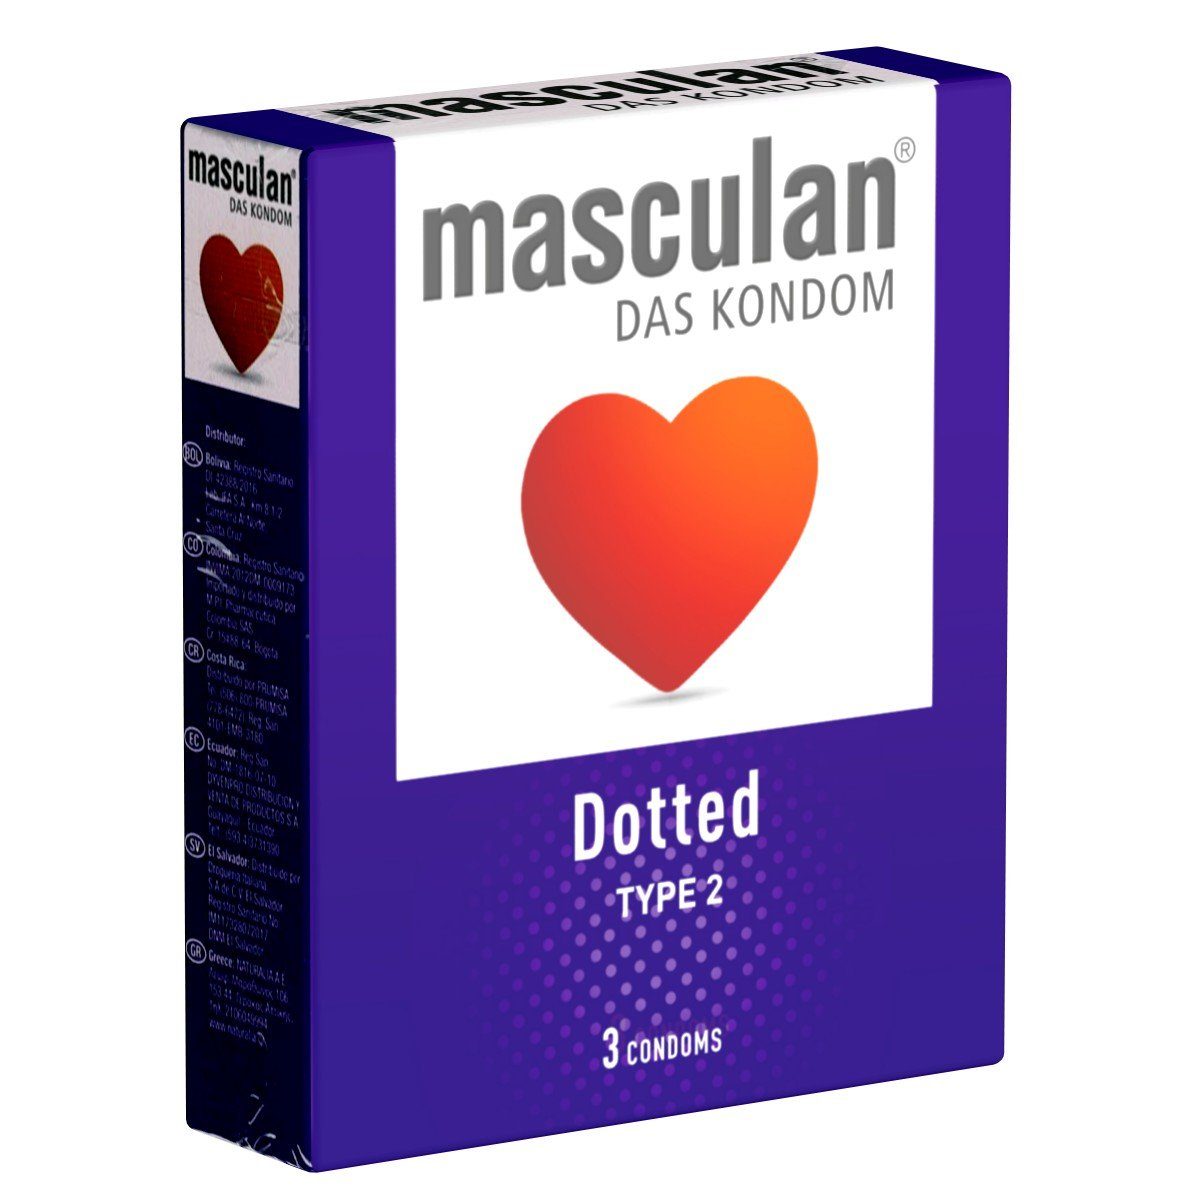 Masculan Kondome Typ 2 (dotted) Packung mit, 3 St., stimulierende Qualitätskondome für prickelnde Abwechslung, genoppte Kondome für mehr Gefühl